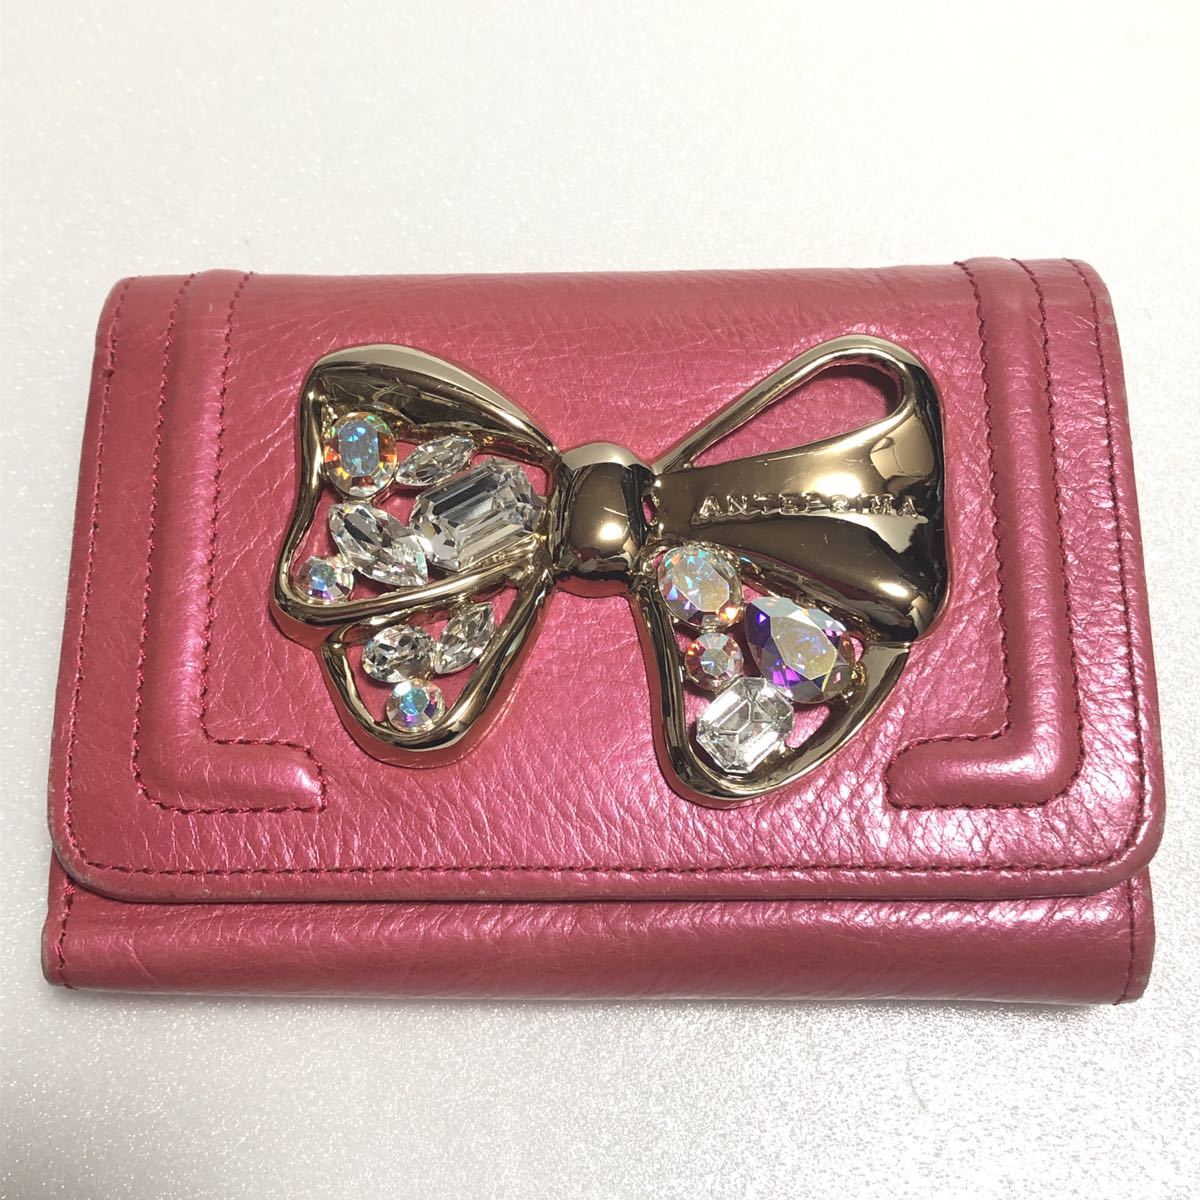 ANTEPRIMA アンテプリマ 大きい割引 折財布 即納送料無料 リボン装飾 ピンク